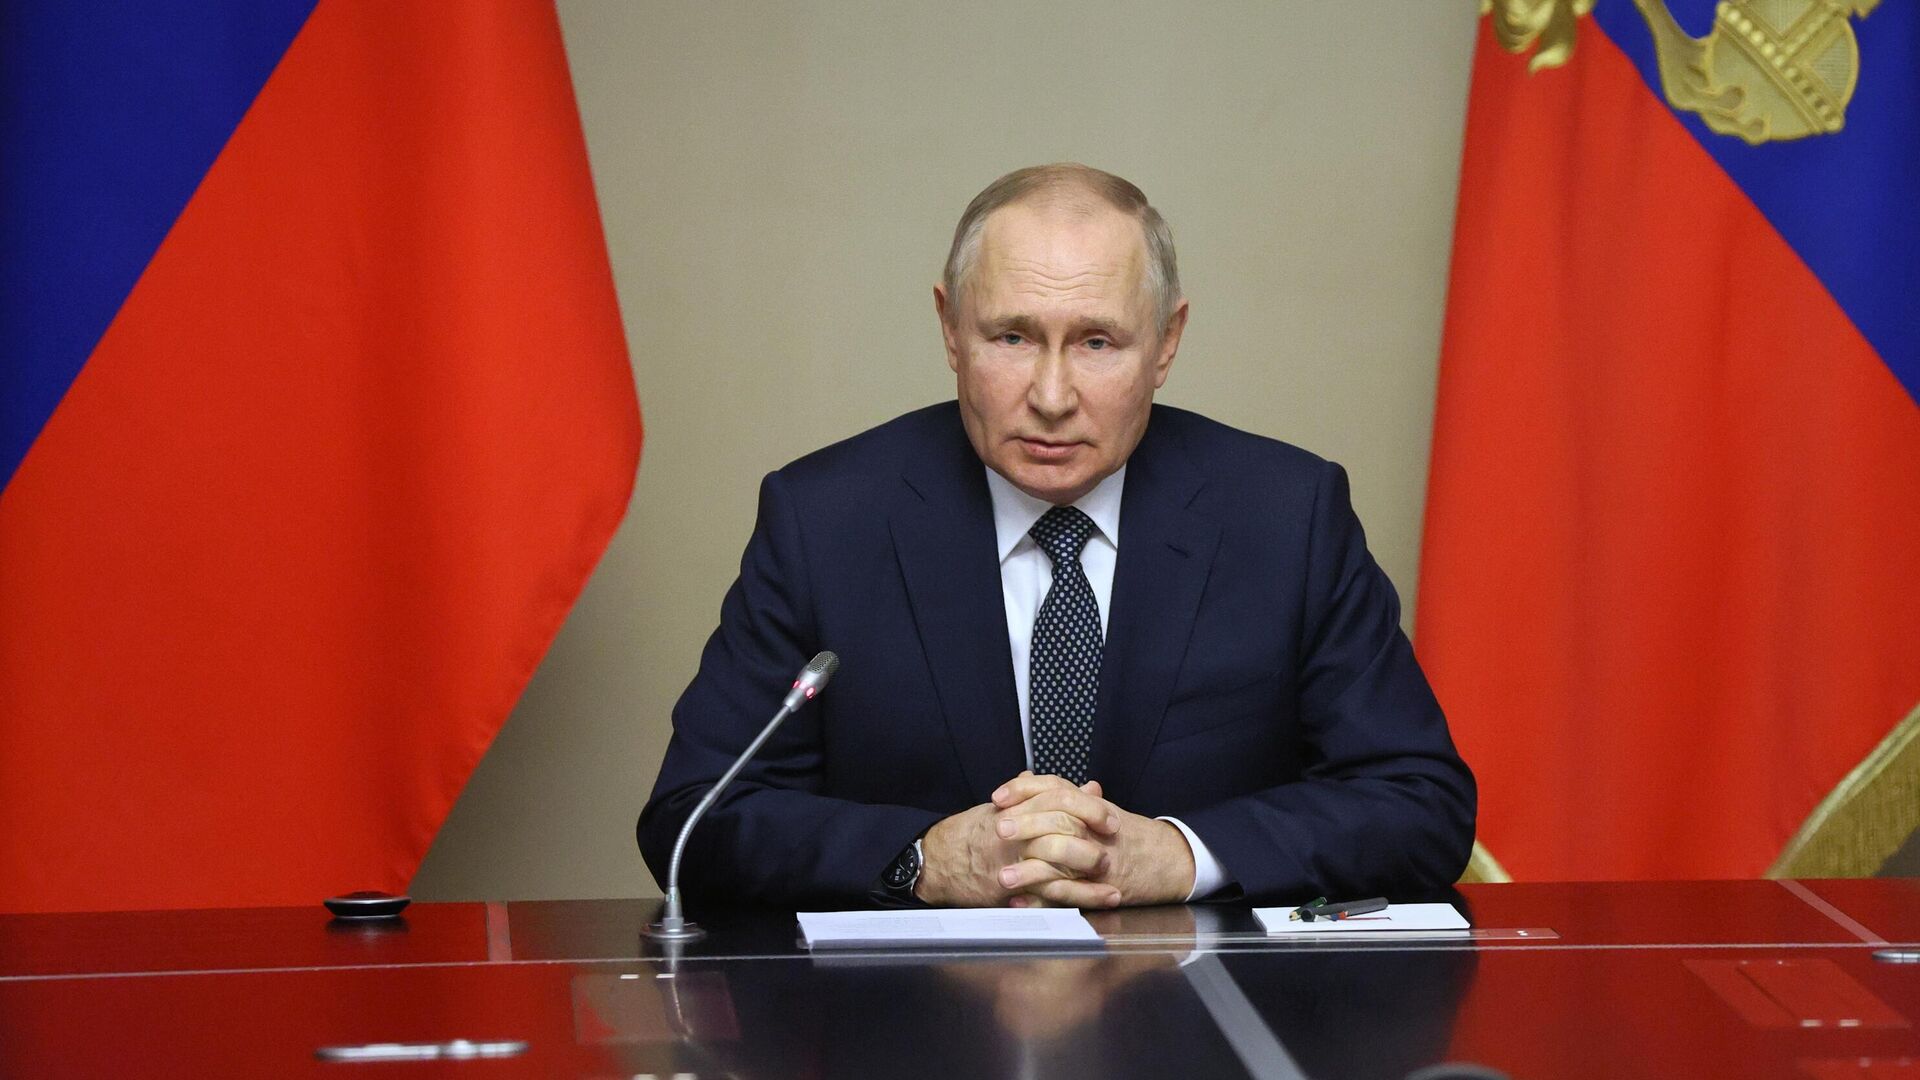 Кадыров назвал решение Путина участвовать в выборах правильным и необходимым